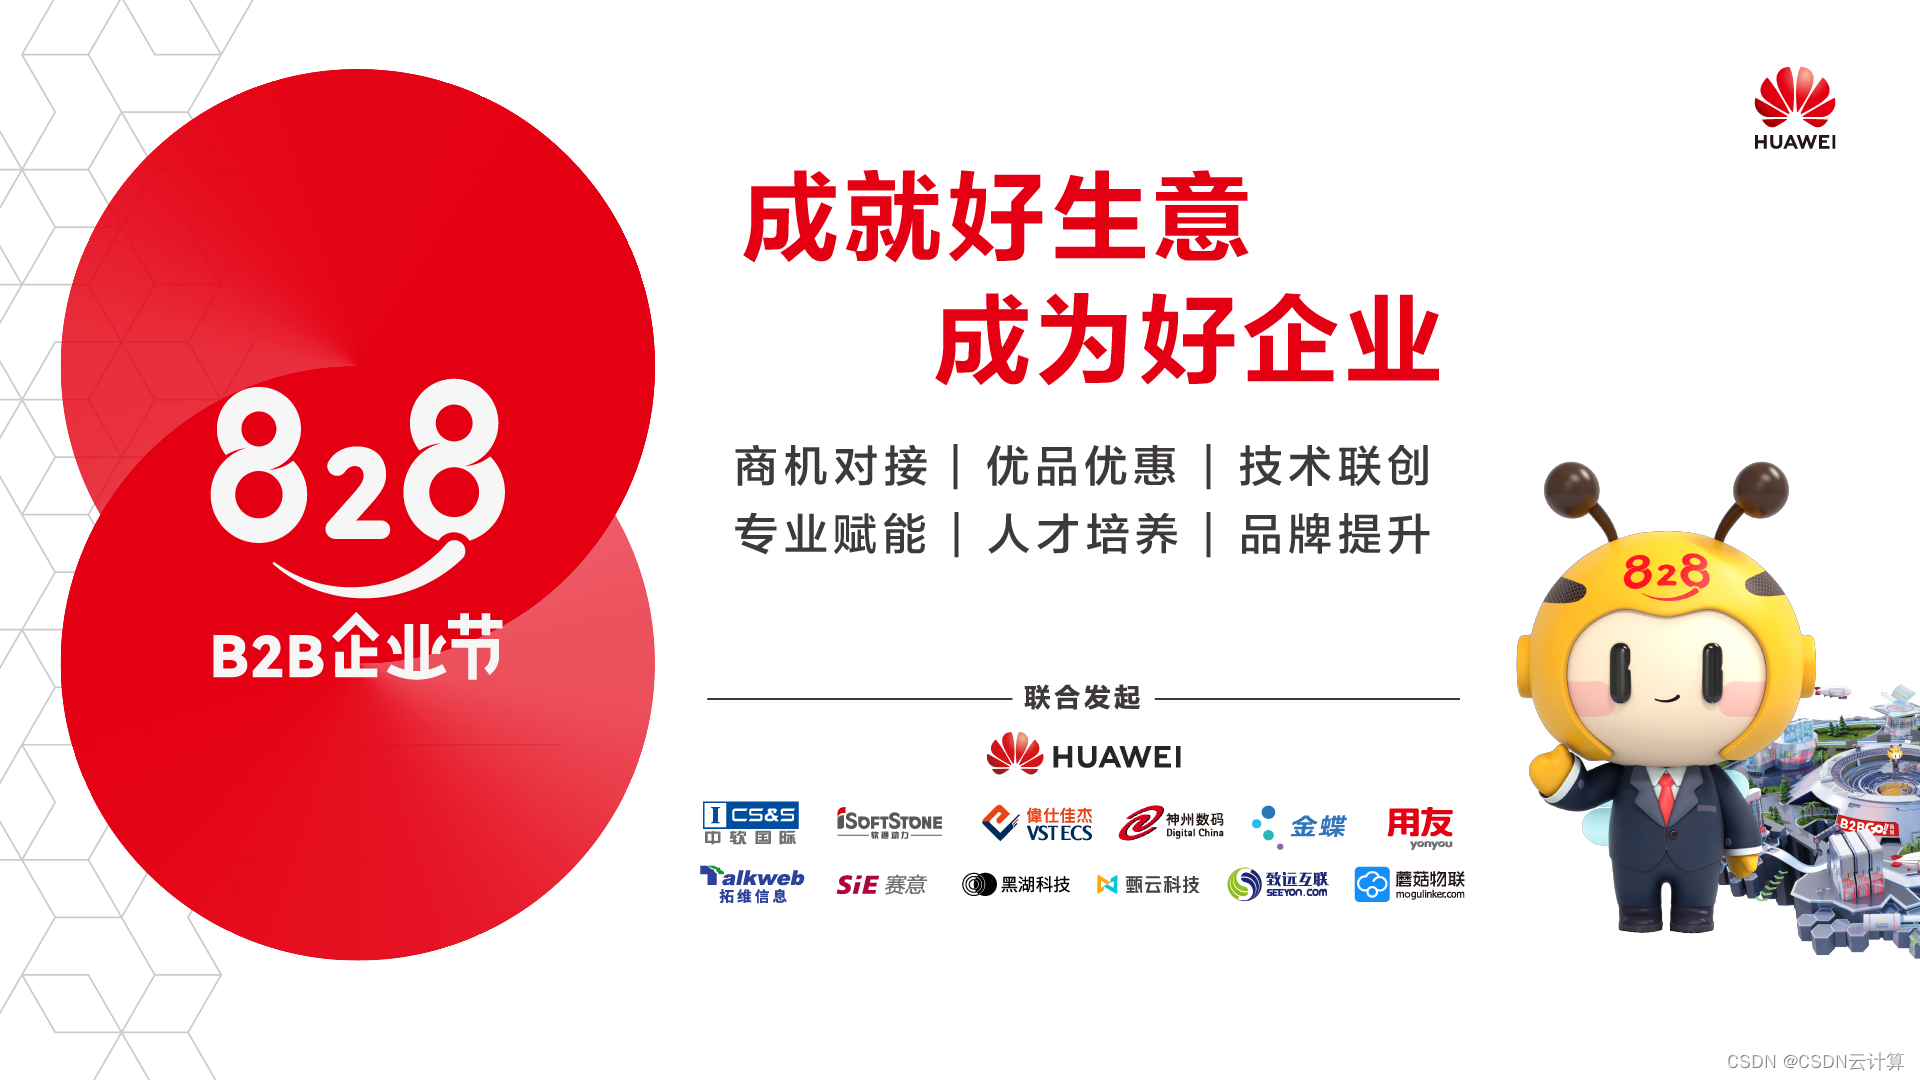 第二届828 B2B企业节启动，华为云携手上万伙伴共筑企业应用一站购平台